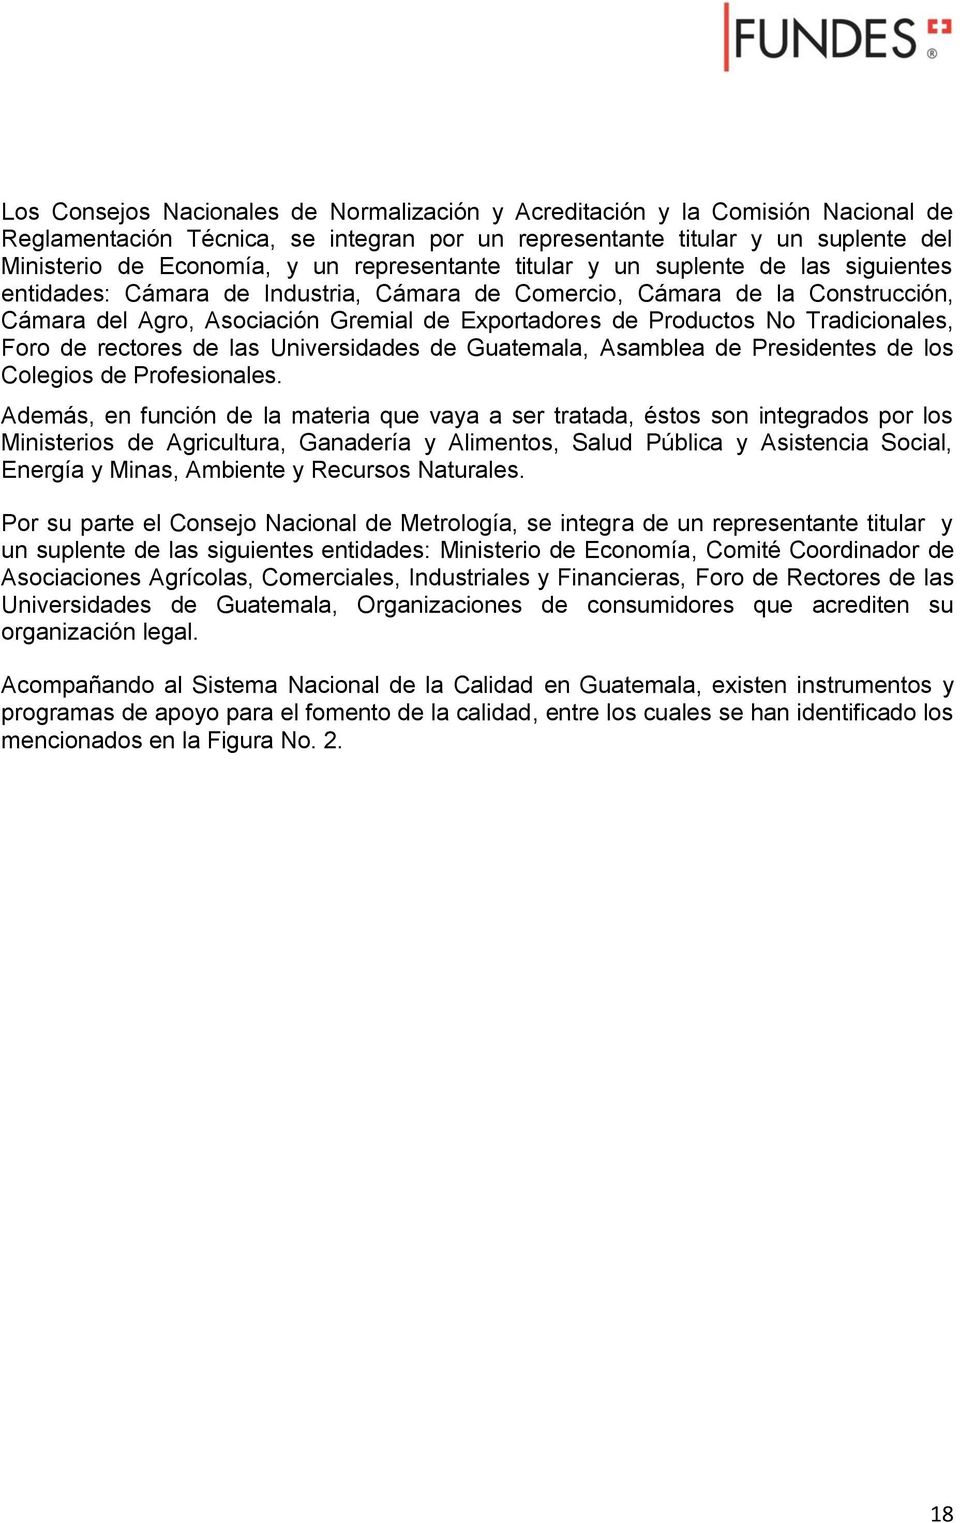 No Tradicionales, Foro de rectores de las Universidades de Guatemala, Asamblea de Presidentes de los Colegios de Profesionales.